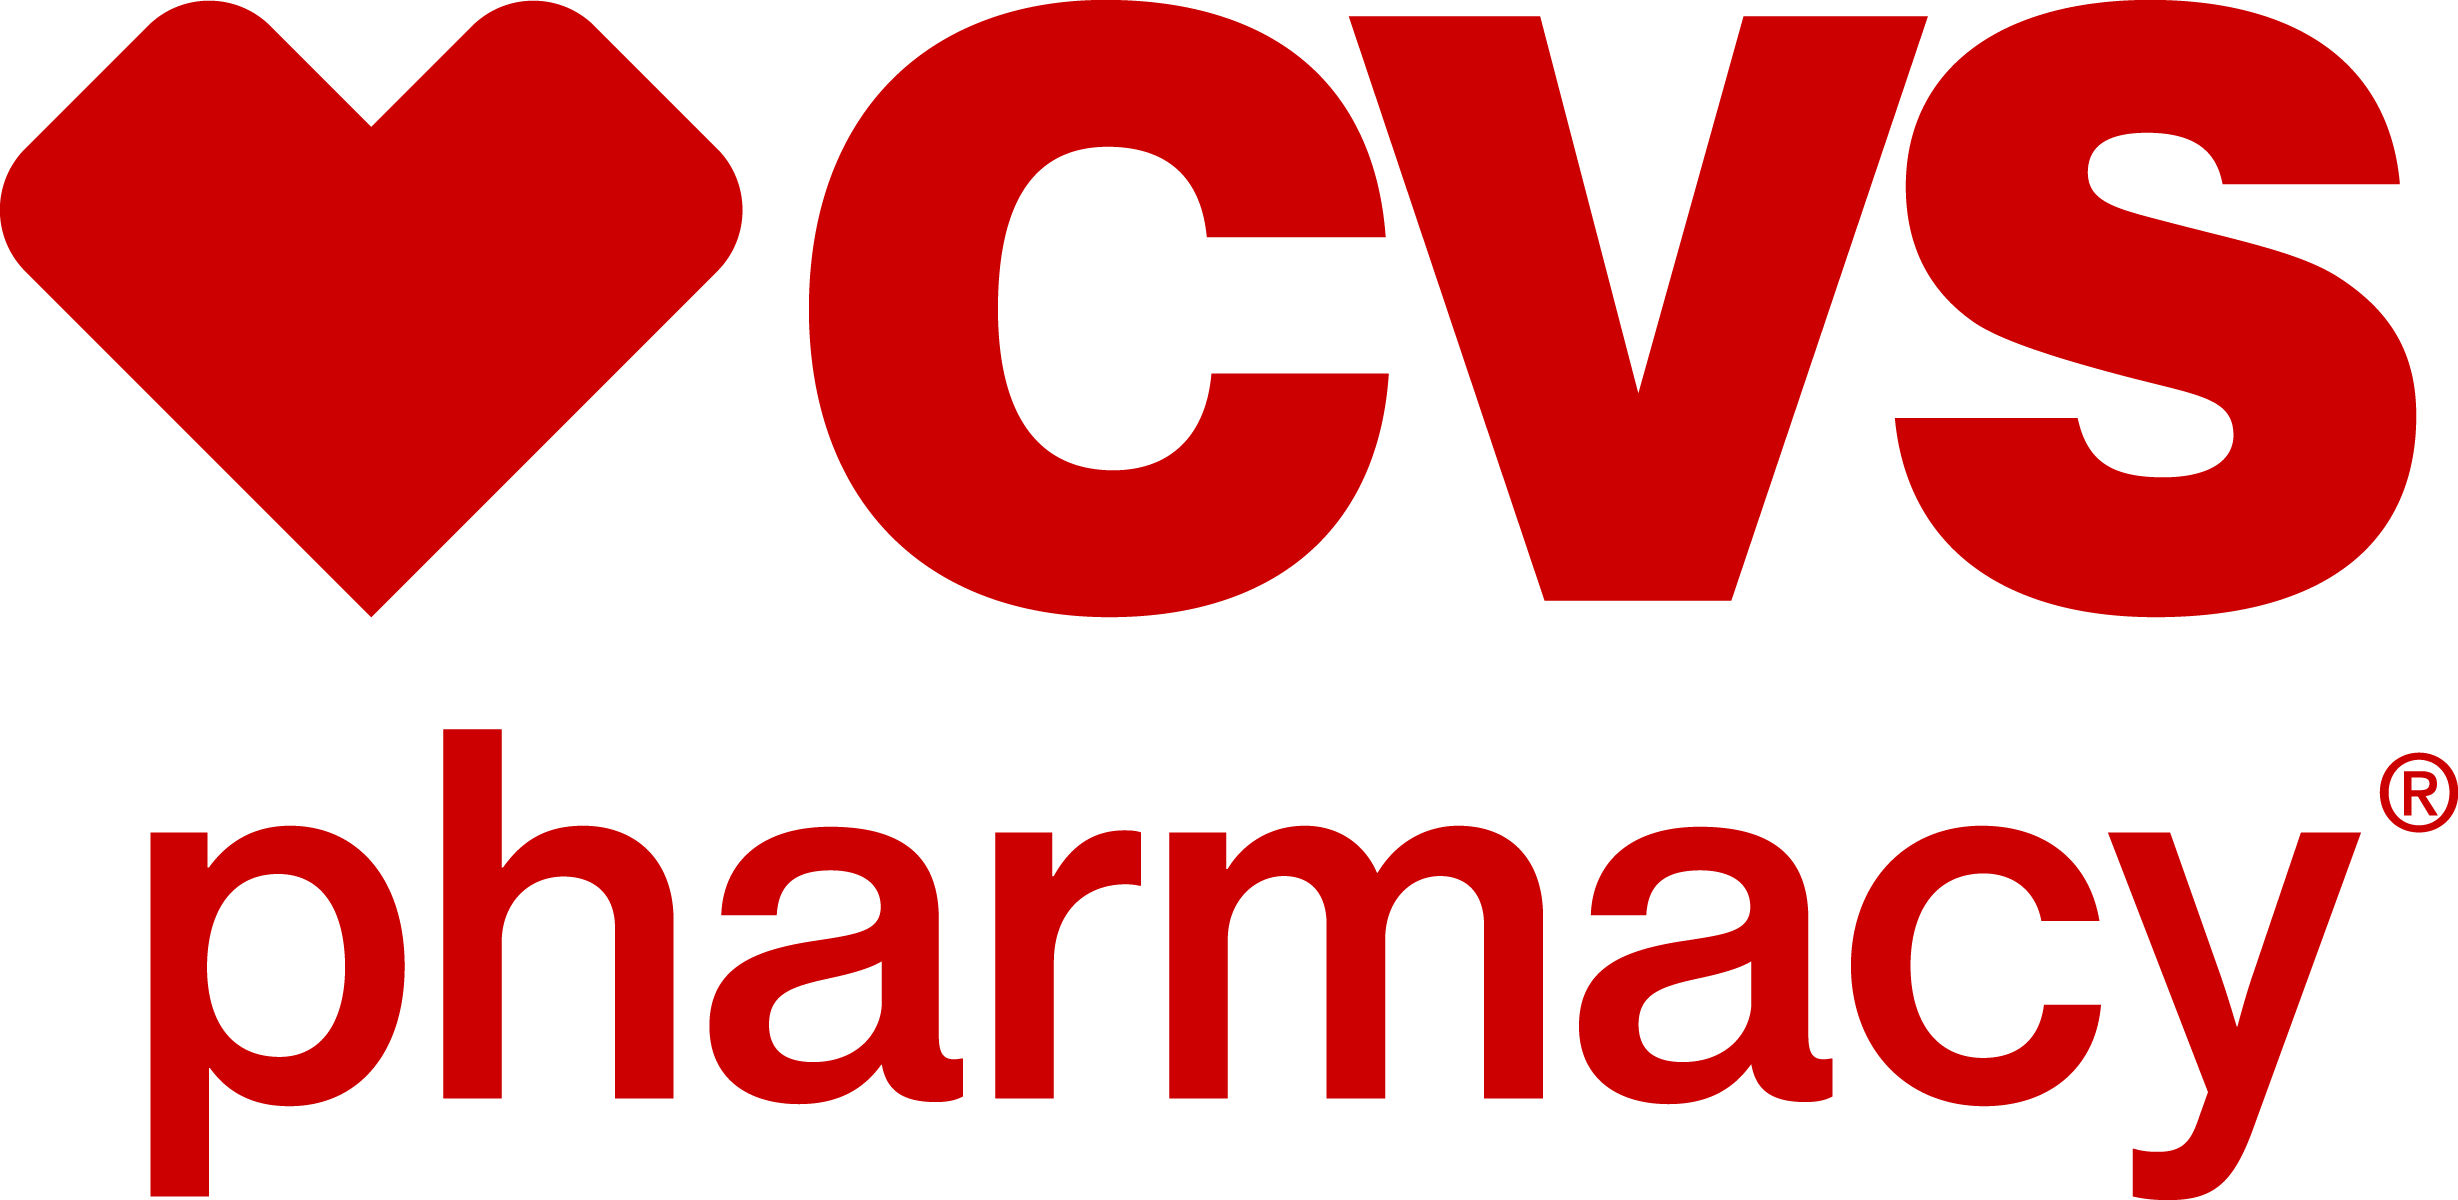 pharmacy clipart vector